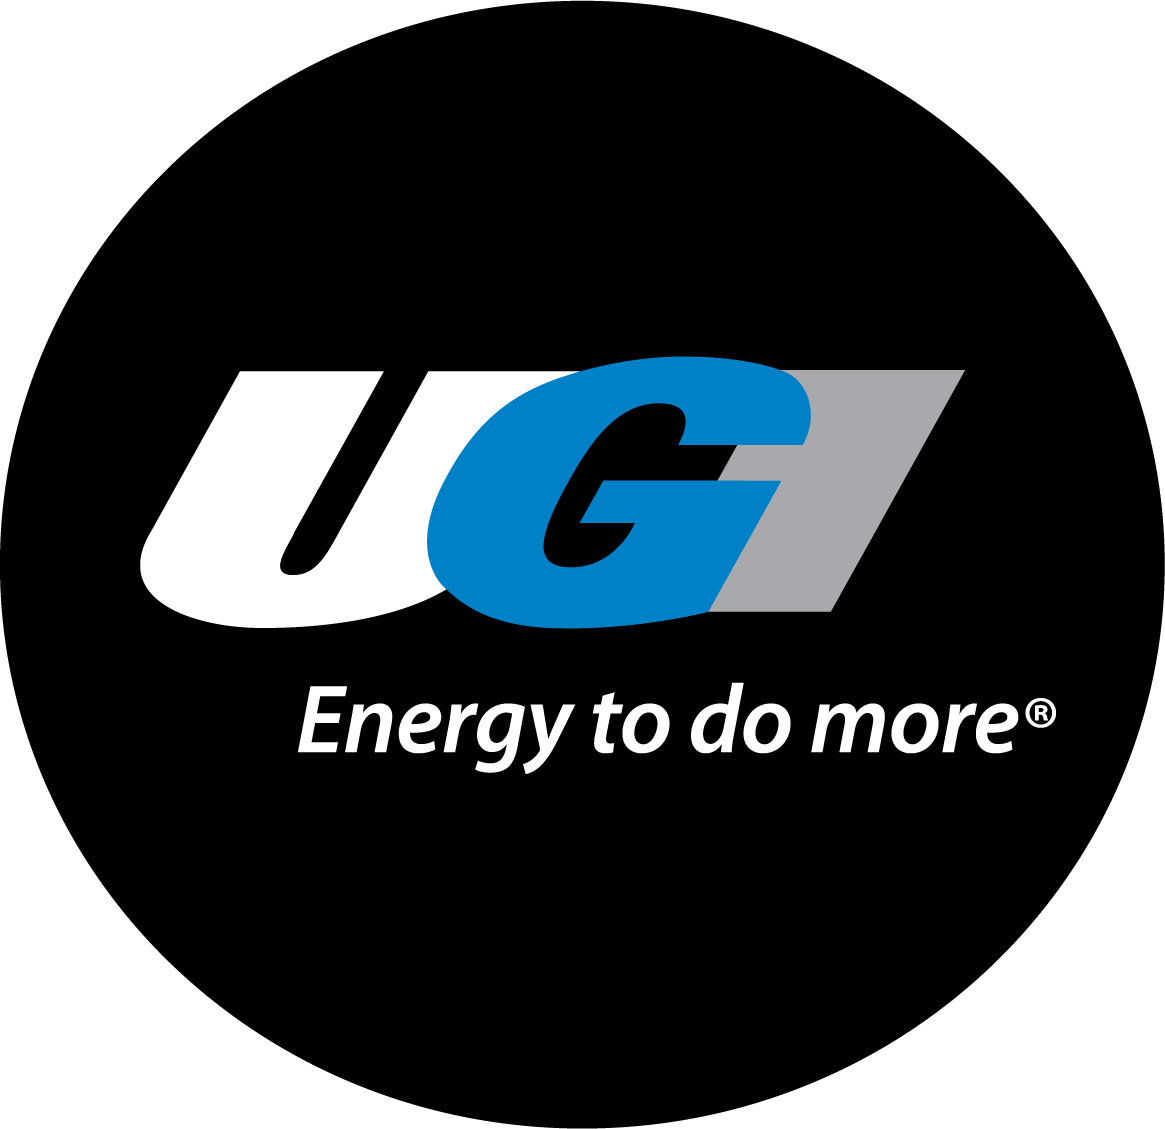 UGI Energy to Do More